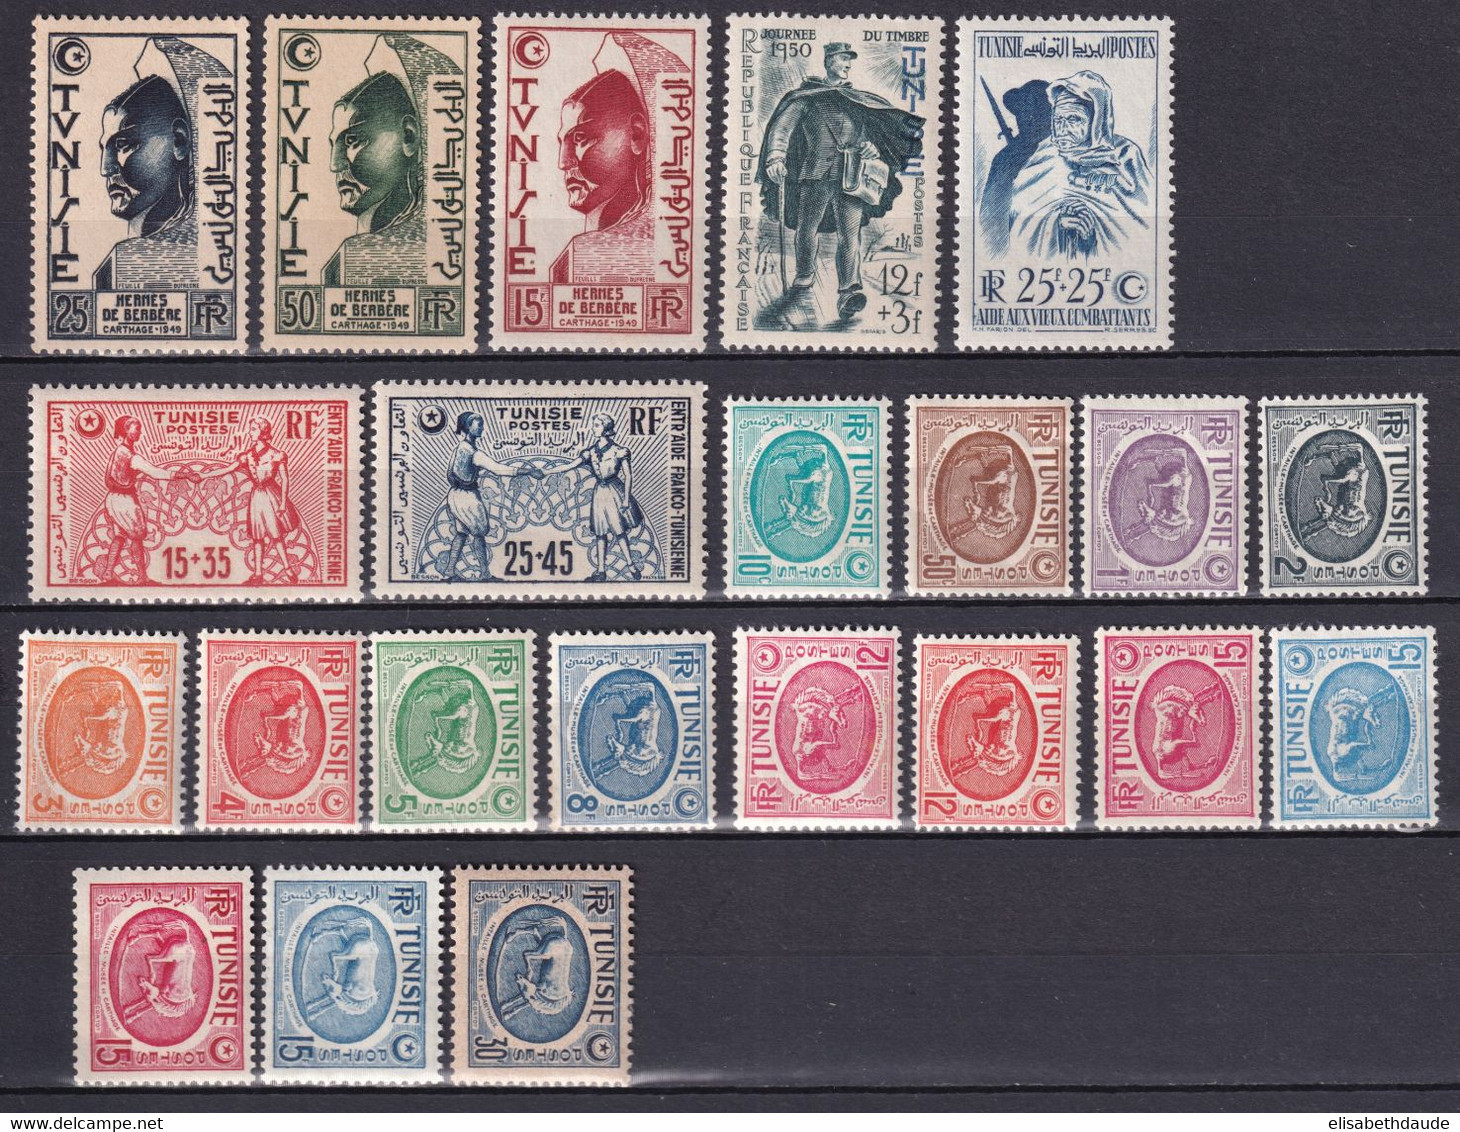 TUNISIE - 1950 - ANNEE COMPLETE - YVERT N° 334/348 * MLH - COTE = 30.5 EUR. - Unused Stamps